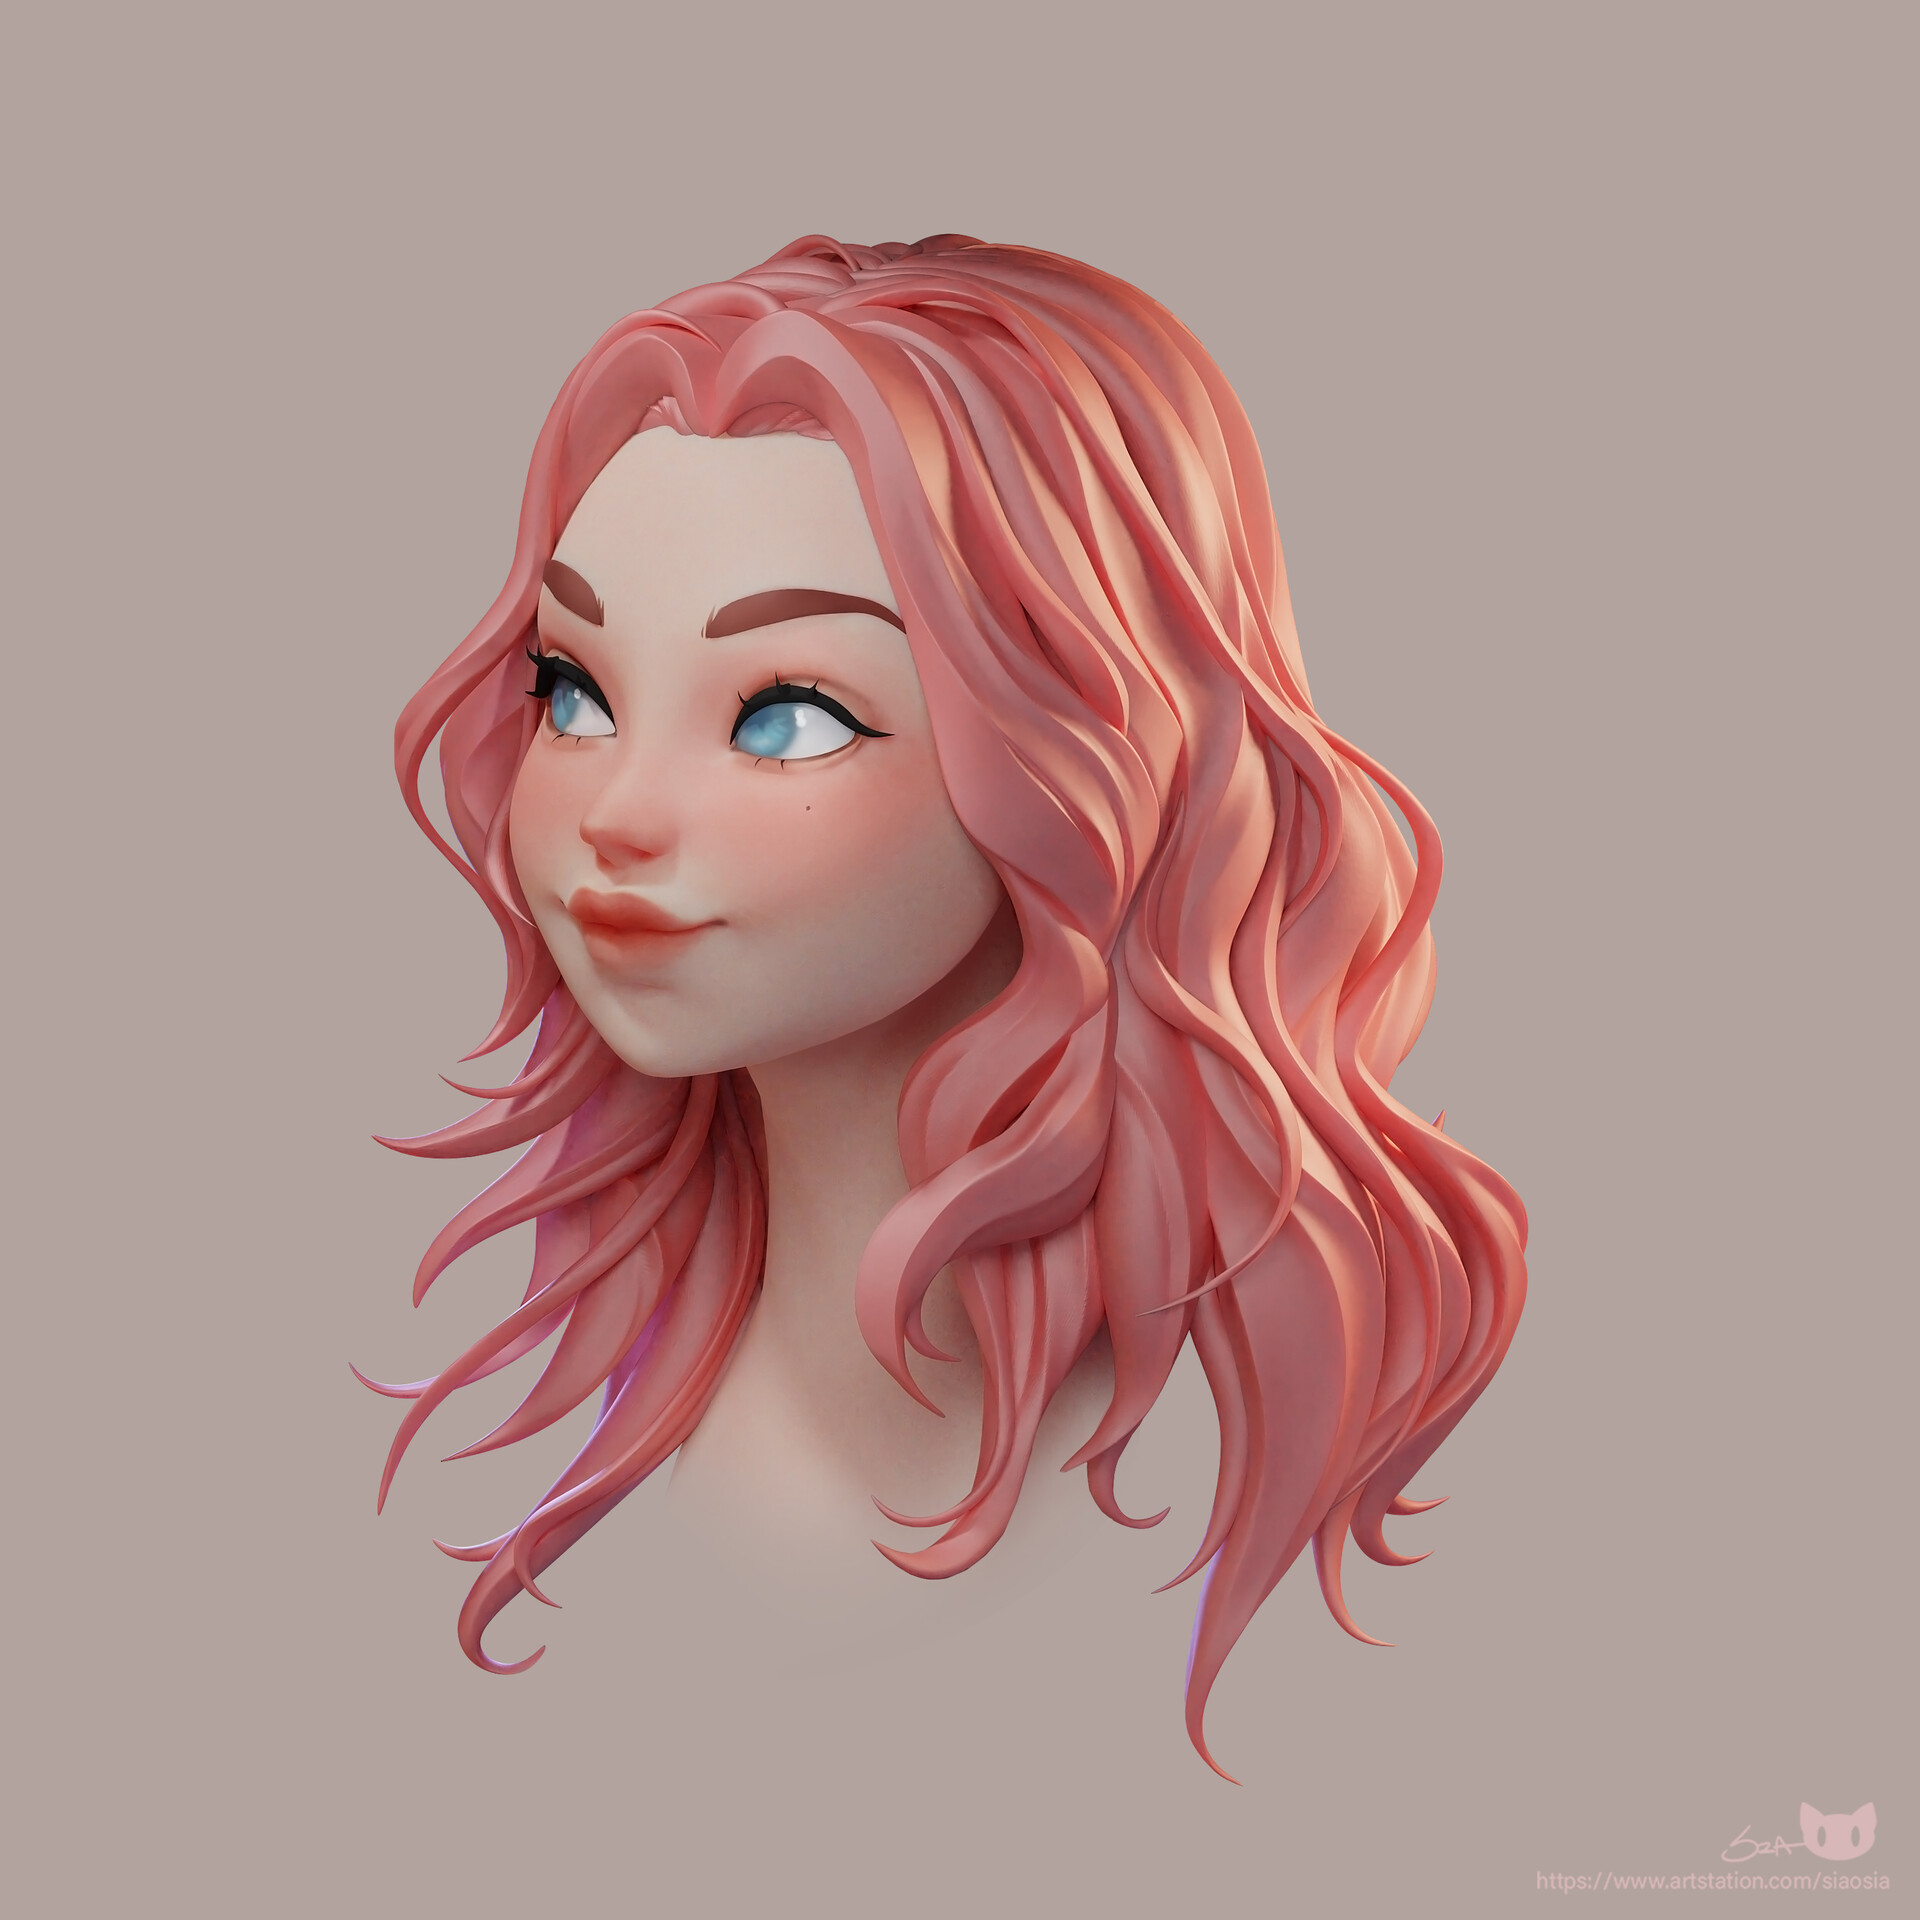 ArtStation - Pink hair girl